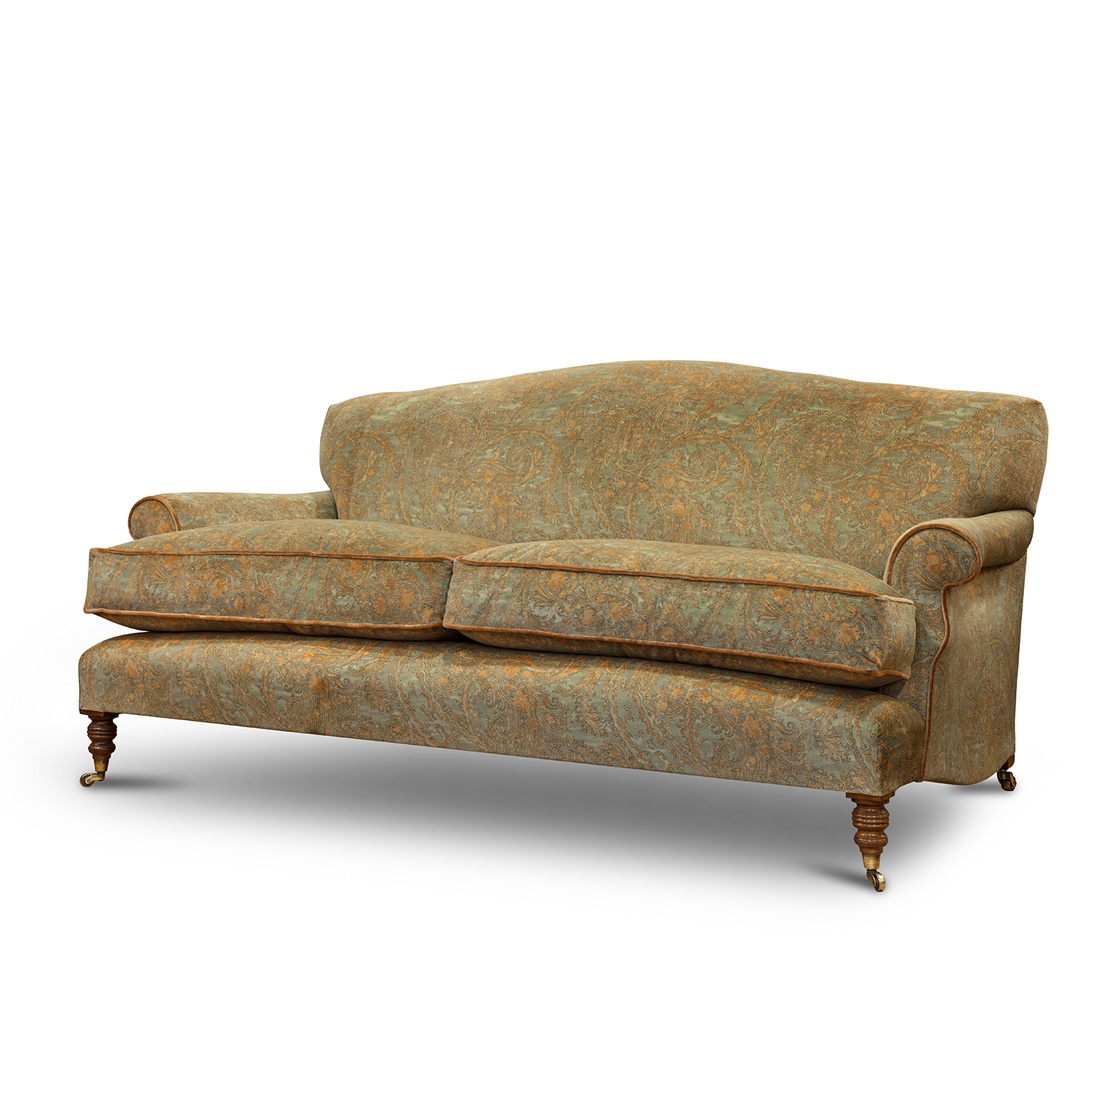 Wexford sofa 2.5s in Balthazar - Verdigris - Beaumont & Fletcher